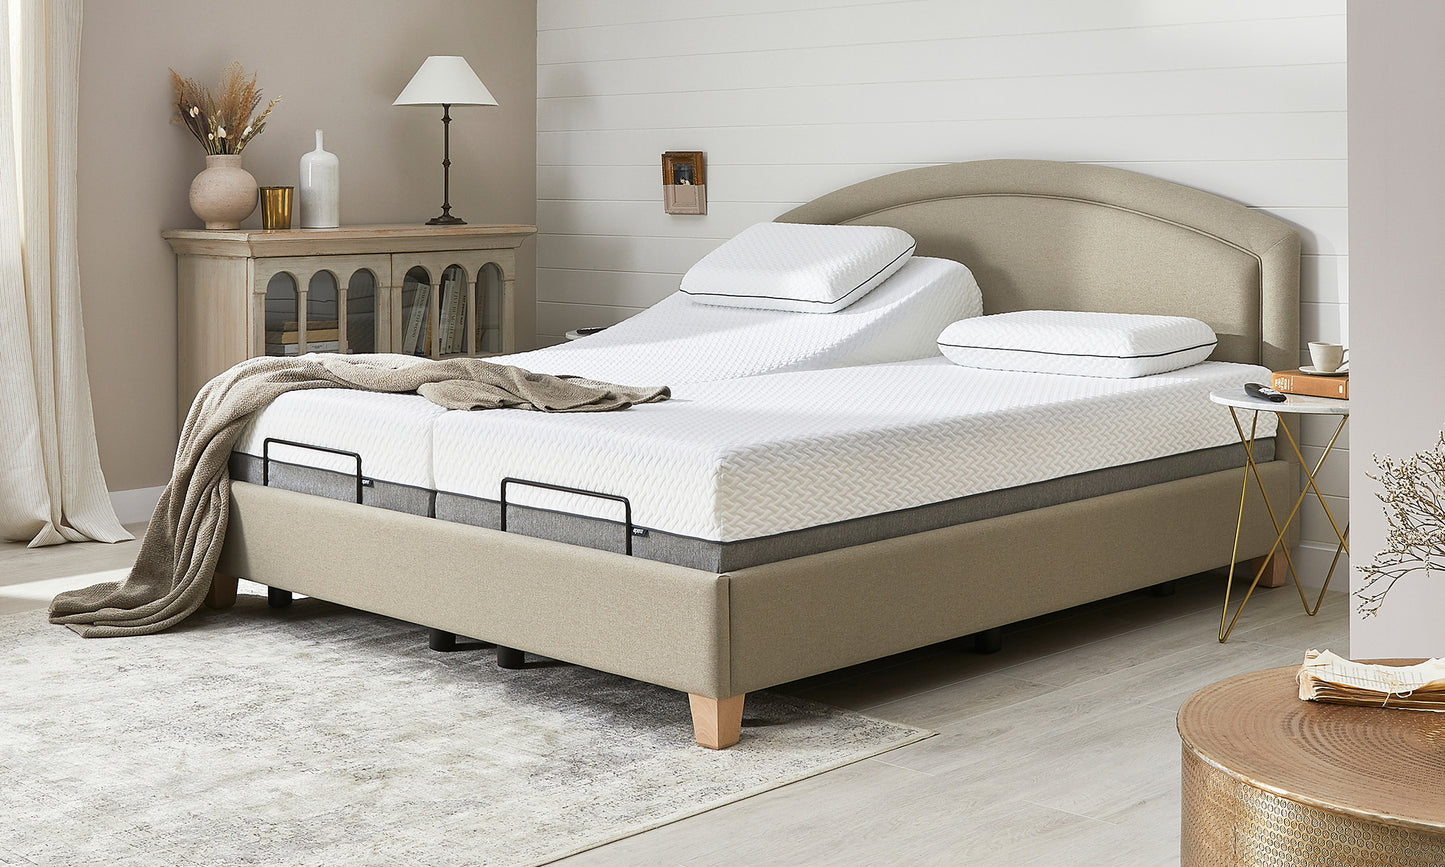 Eden adjustable bed 6ft in a room set